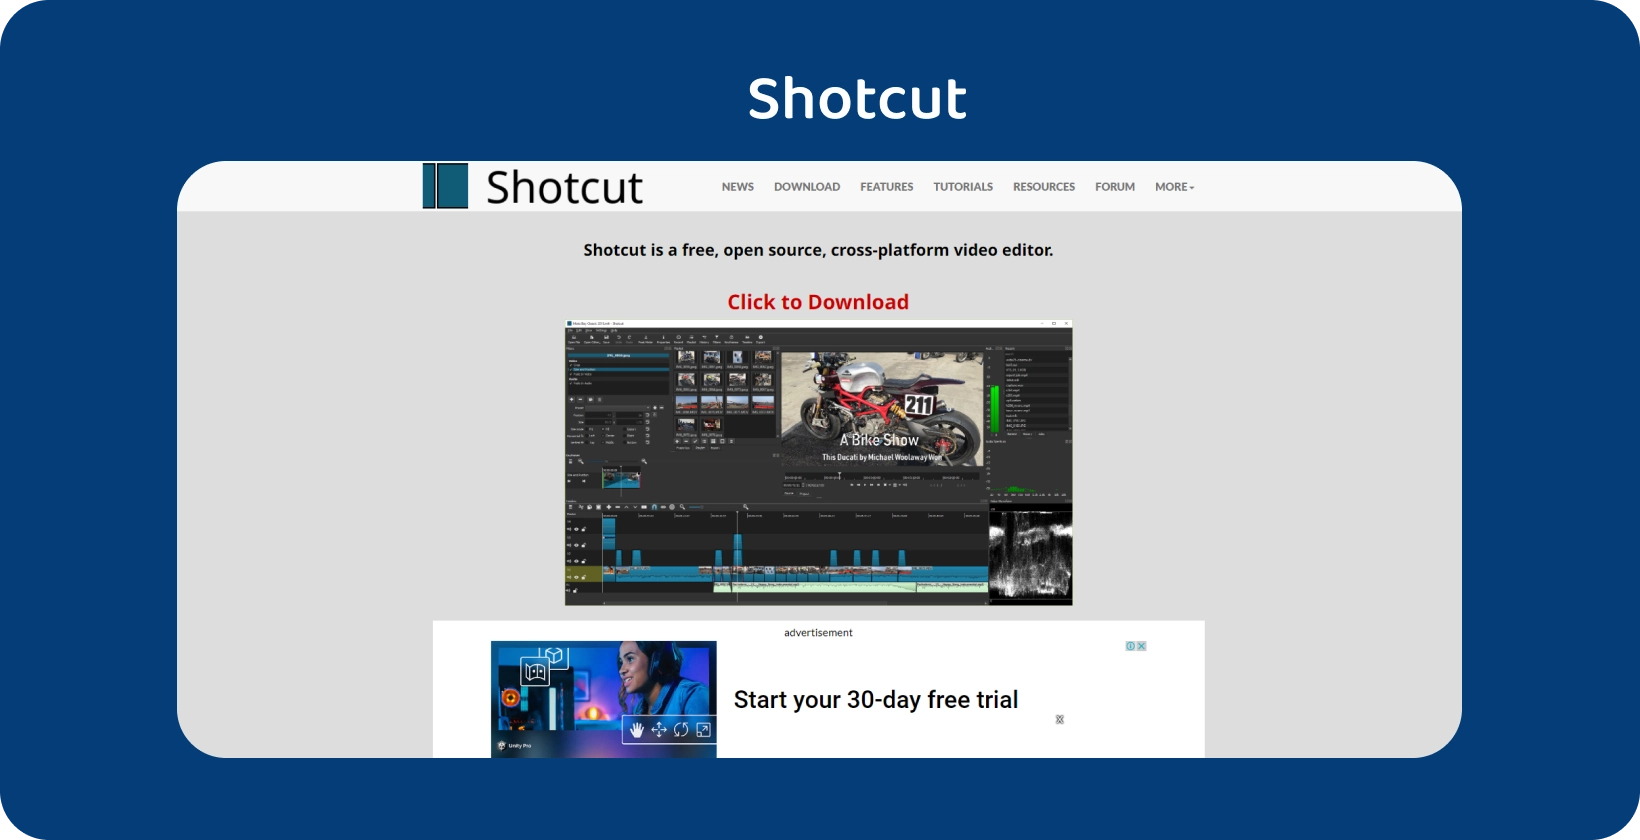 Shotcut інтерфейс редактора: детальна хронологія відео про мотоцикл із надійними інструментами редагування.